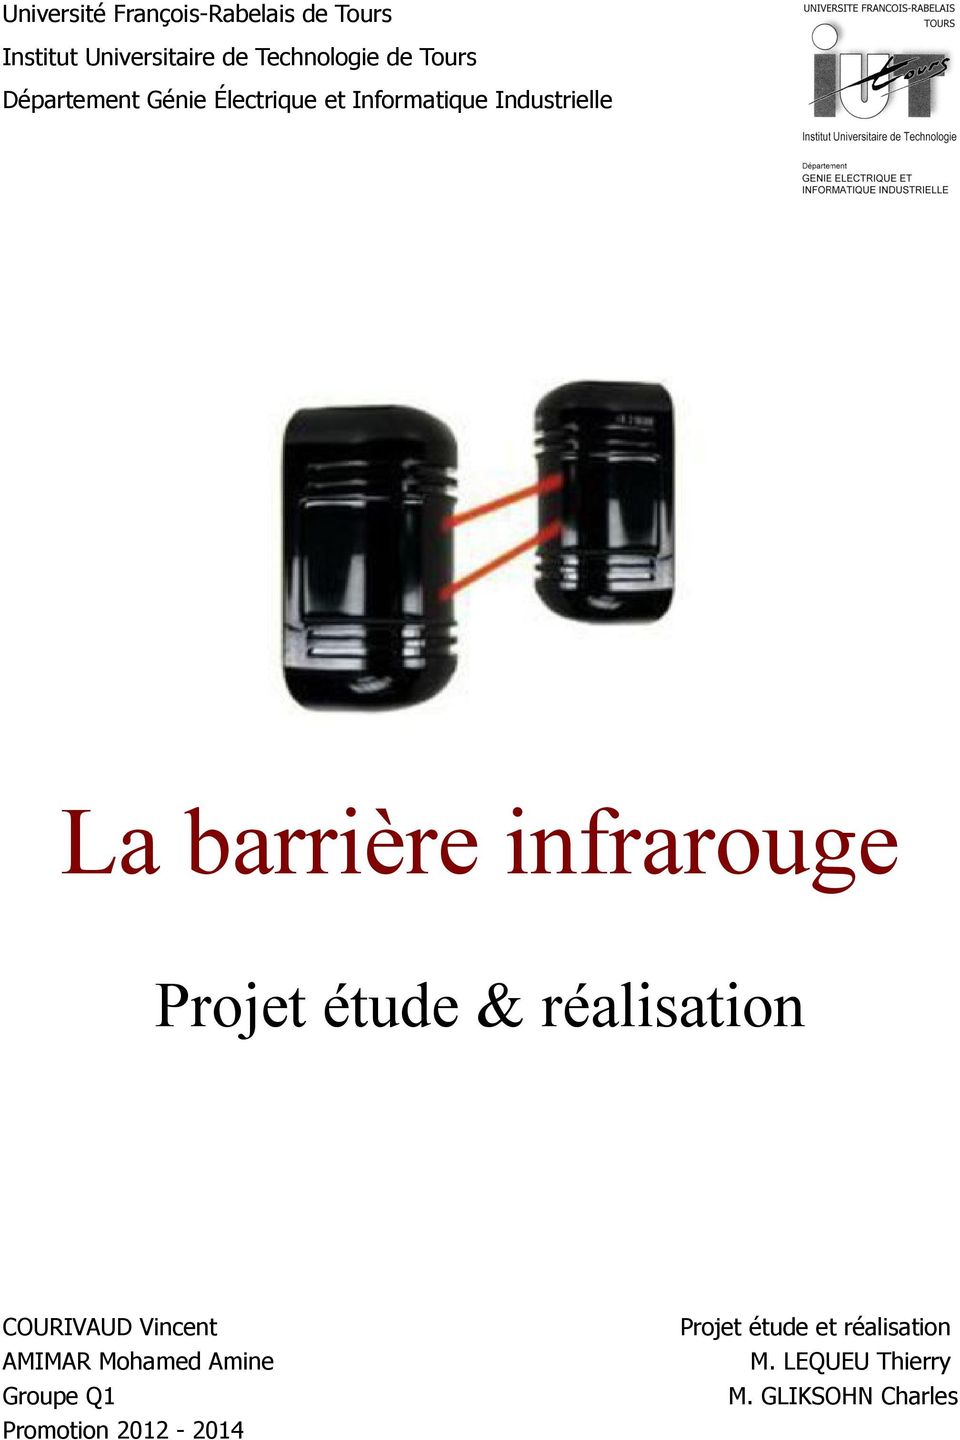 La barrière infrarouge. Projet étude et réalisation - PDF Téléchargement  Gratuit